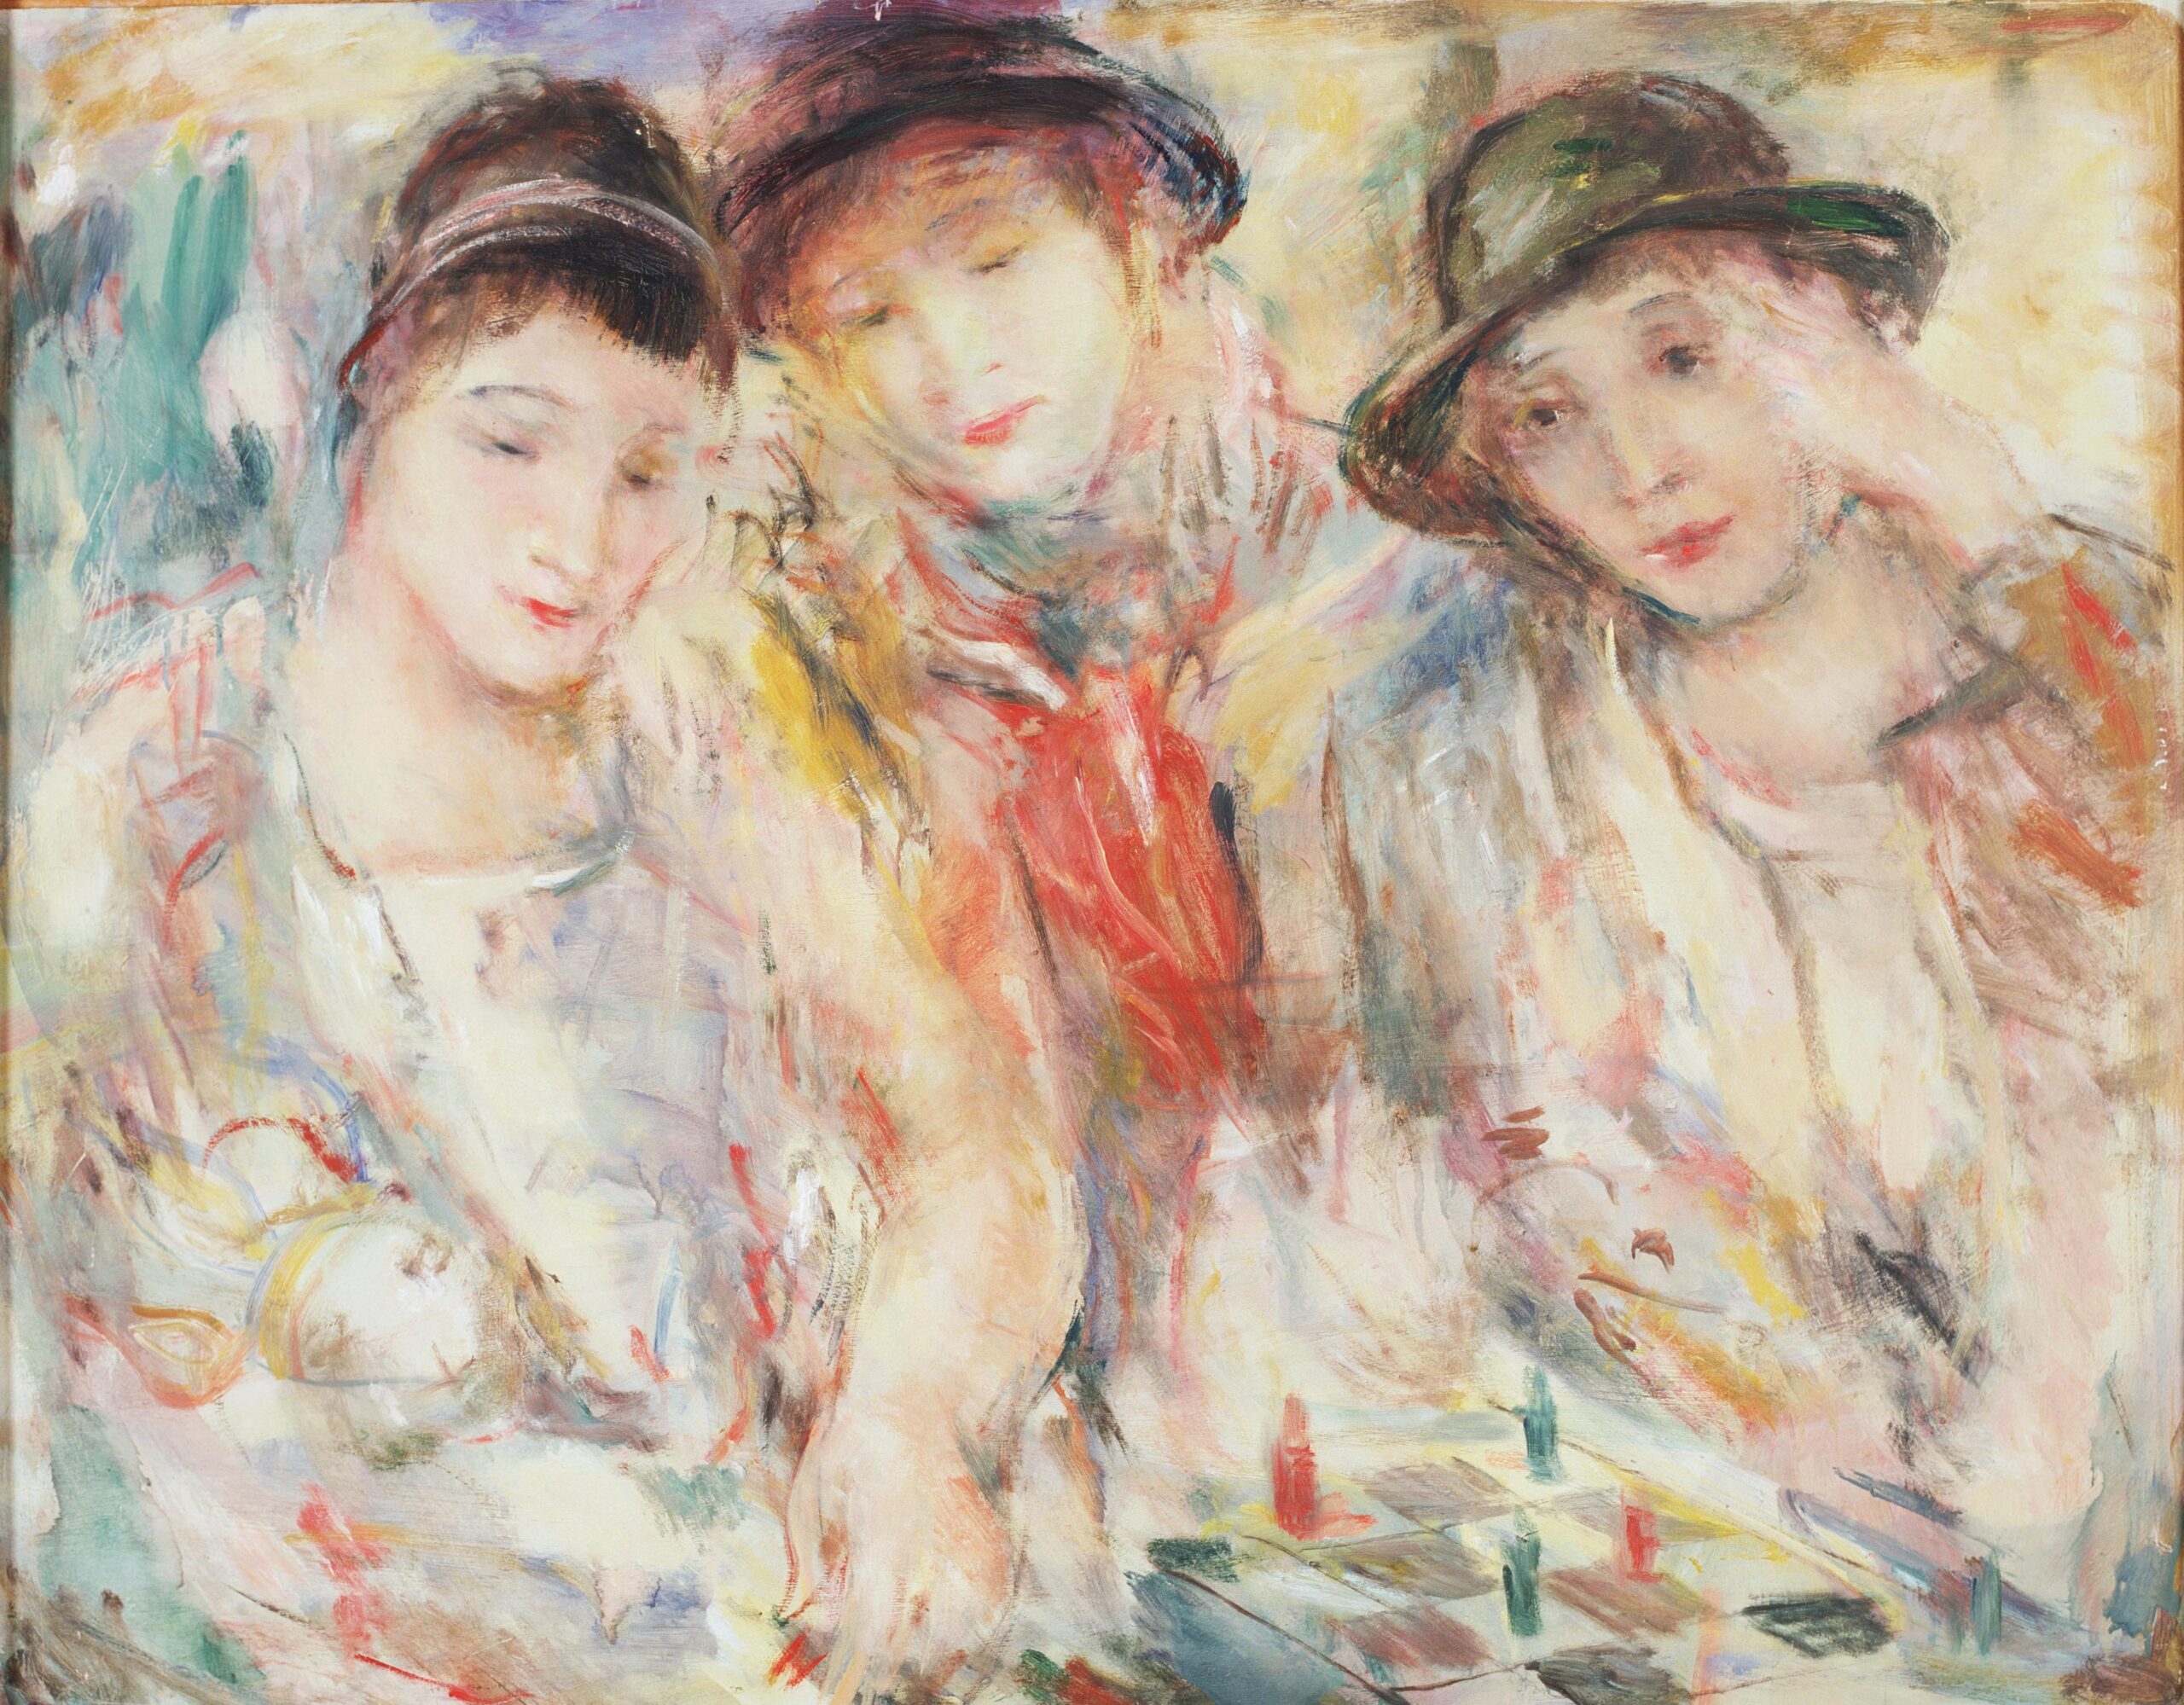 Картина Йоханнеса Гринберга "Втроем" - три женщины в шляпах сидят за столом.